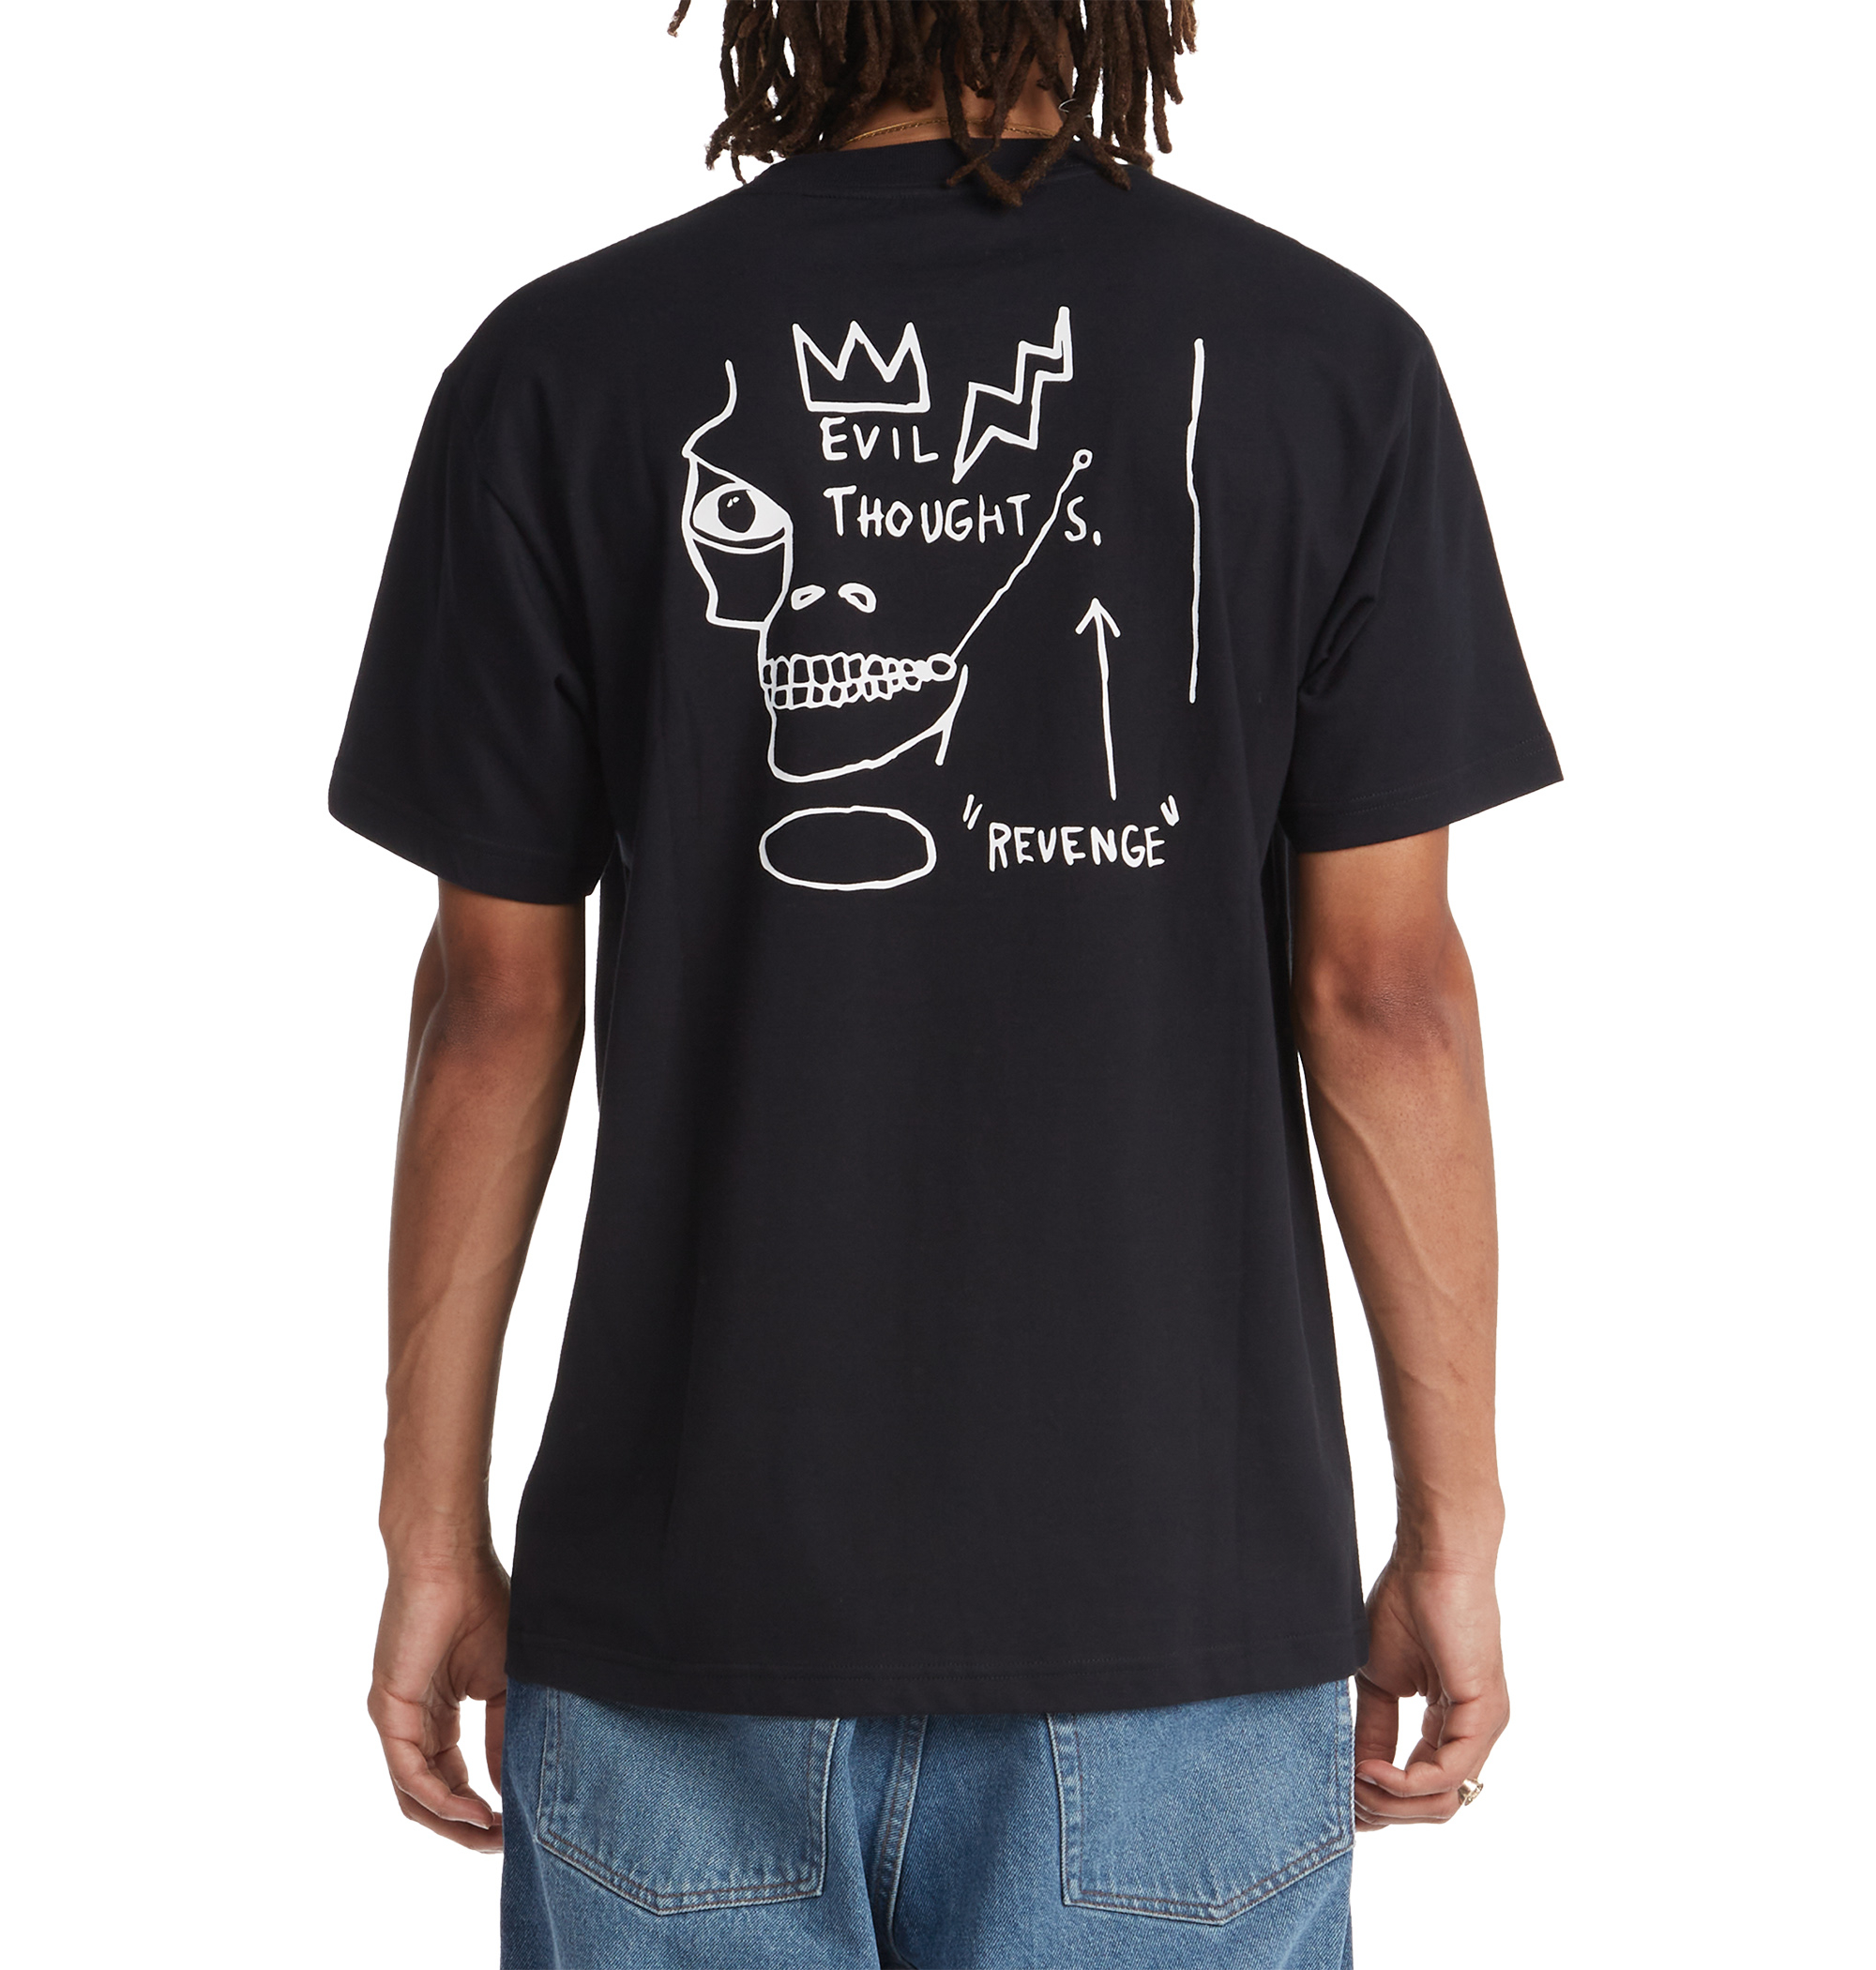 ＜DC Shoe＞ DCxJMB EVIL THOUGHTS HSS 20世紀で最も影響力のあるストリートアーティストの一人Jean-Michel Basquiatが、21歳の時に残した21の作品と、DC SHOESの最も象徴的なヘリテージスタイルであるLynx OGとLegacy OG、 そしてManual Hiをフィーチャーした、フットウェアとアパレルの至極のコレクション